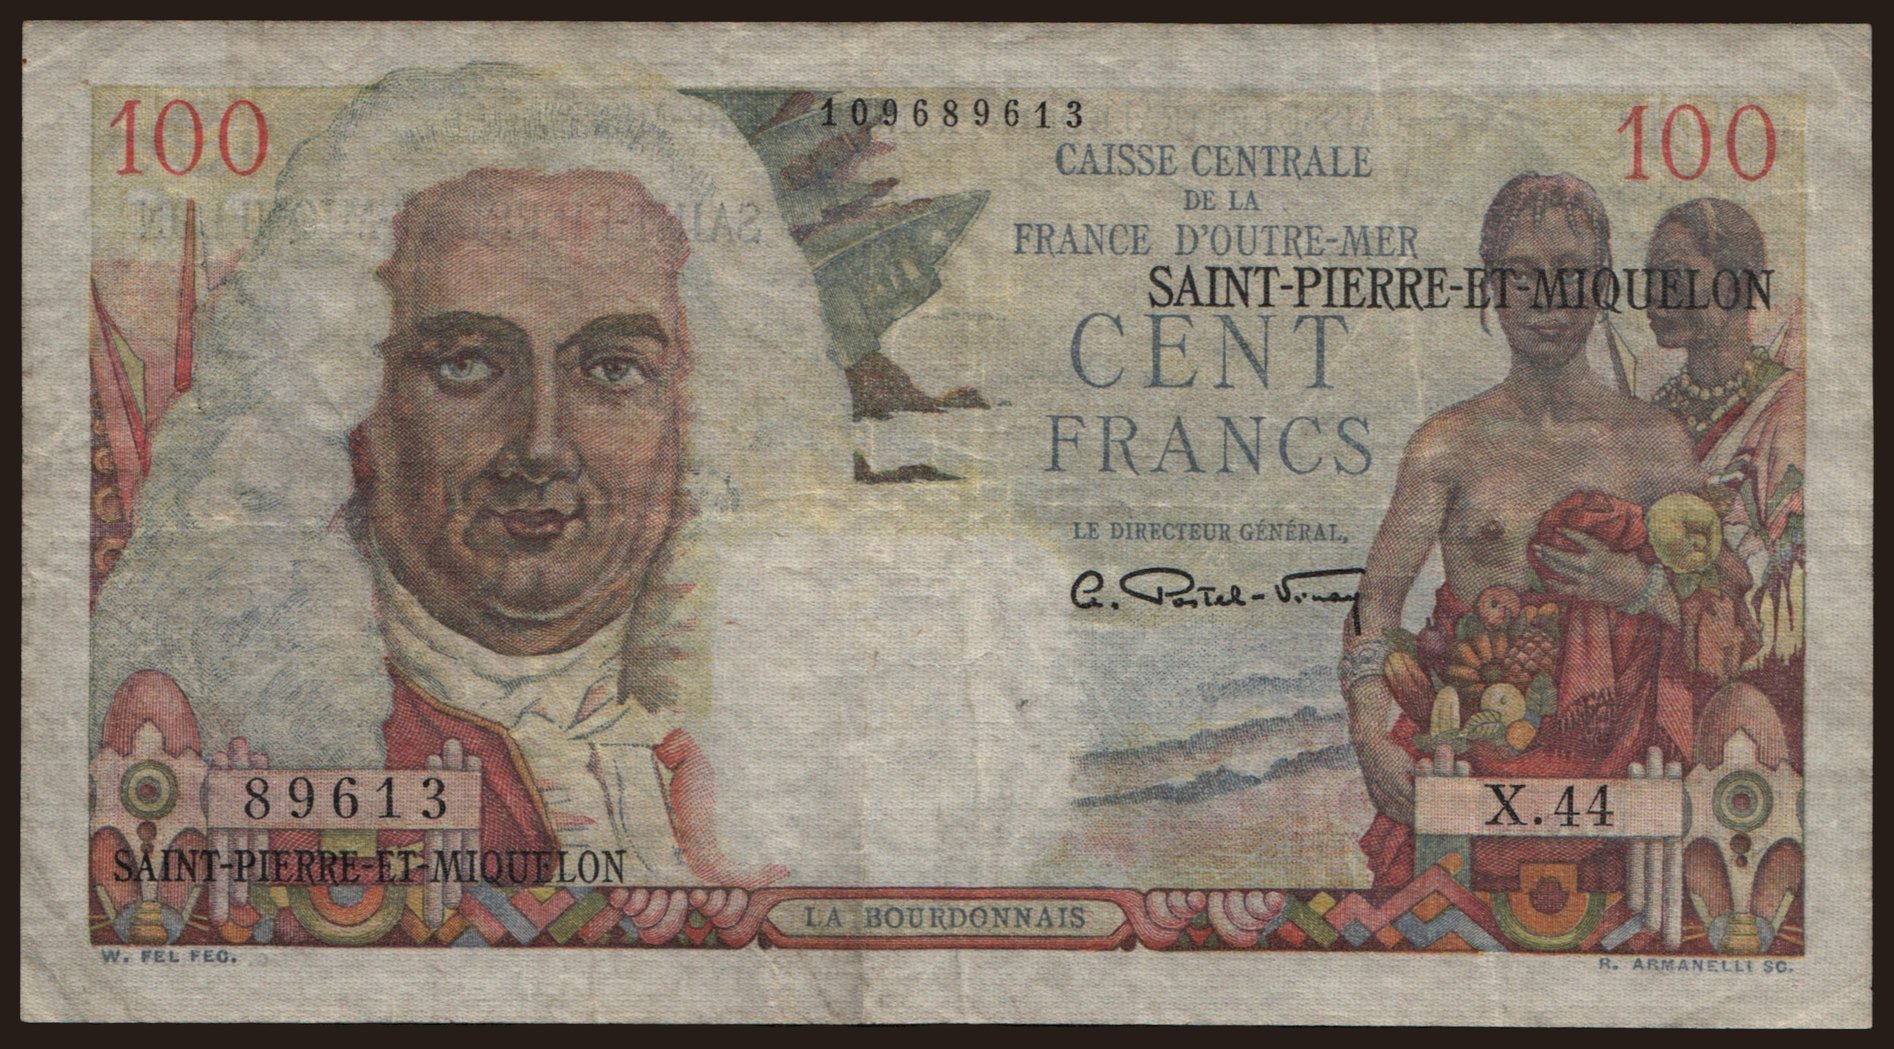 100 francs, 1950